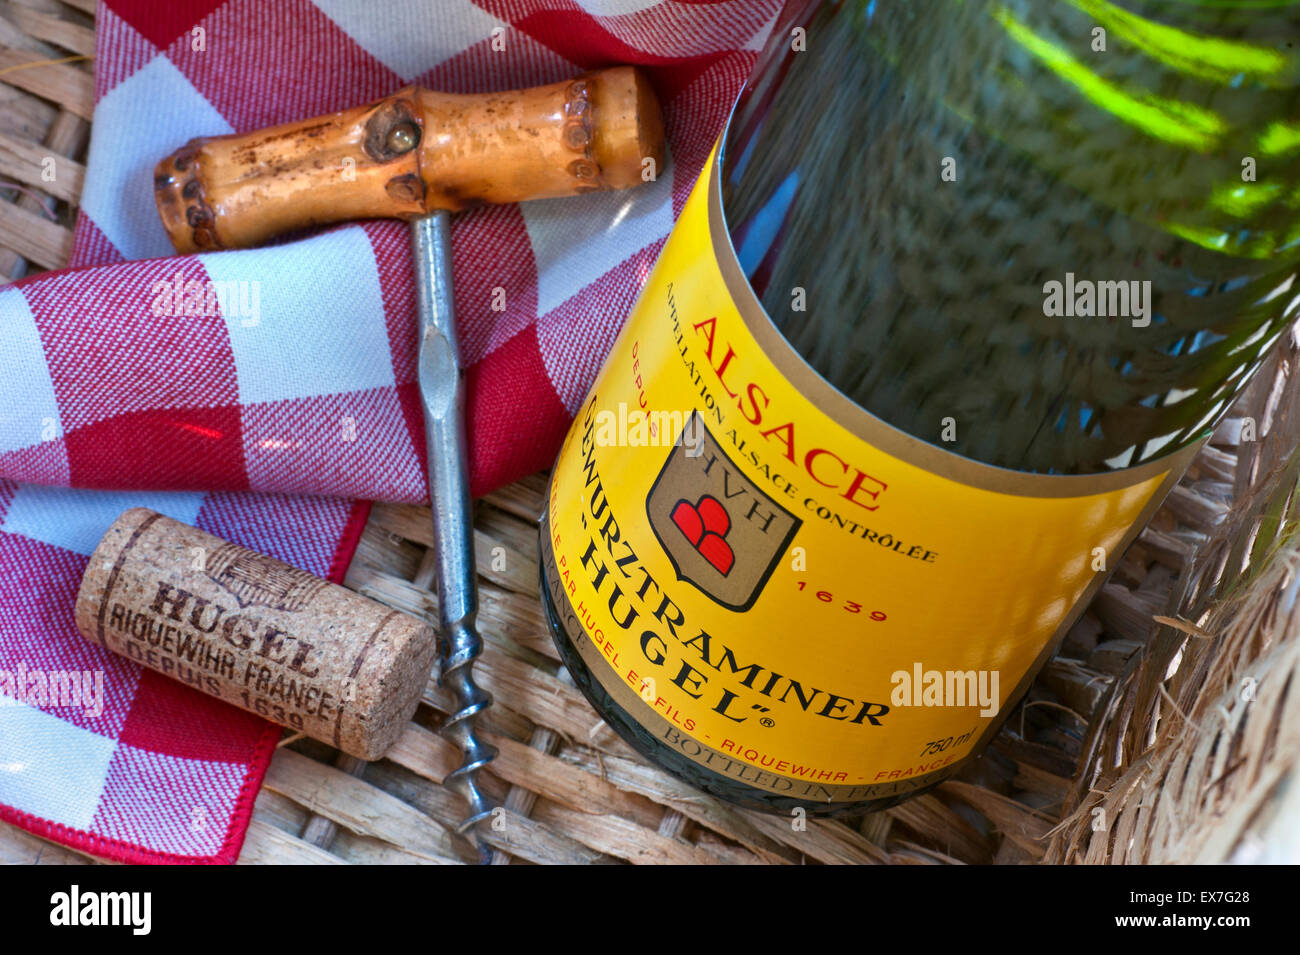 "Hugel' Gewurztraminer vino bianco bottiglia sughero e cavatappi in Cesto picnic nella soleggiata alfresco situazione Riquewihr Alsace Francia Foto Stock